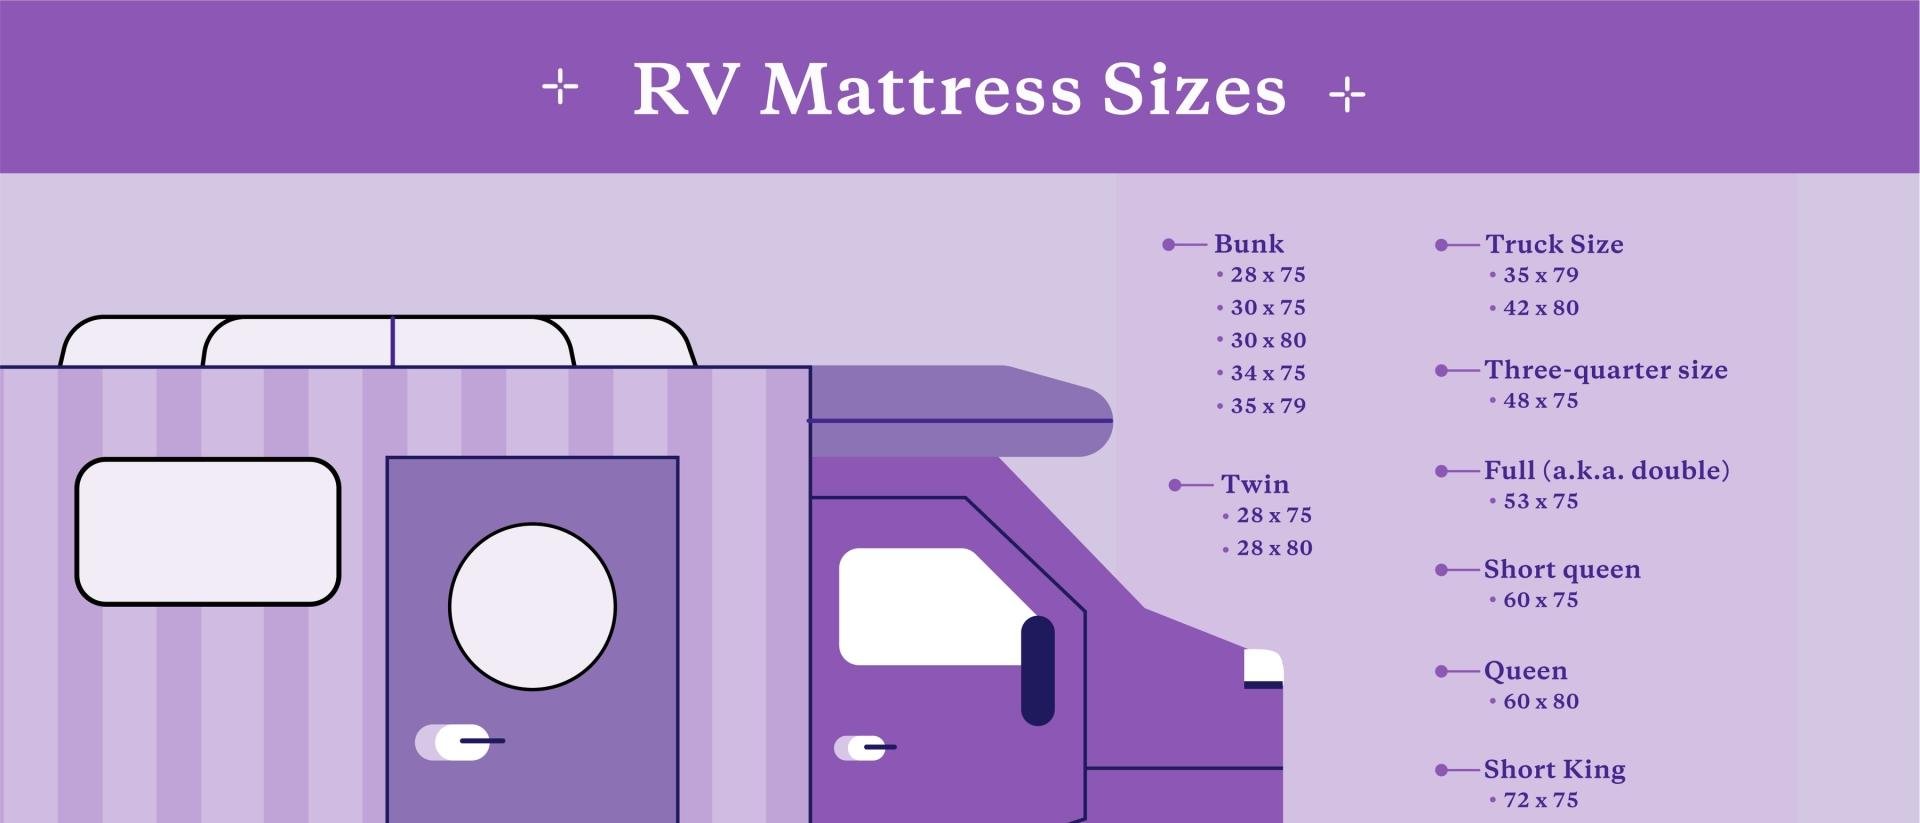 RV Mattress Sizes